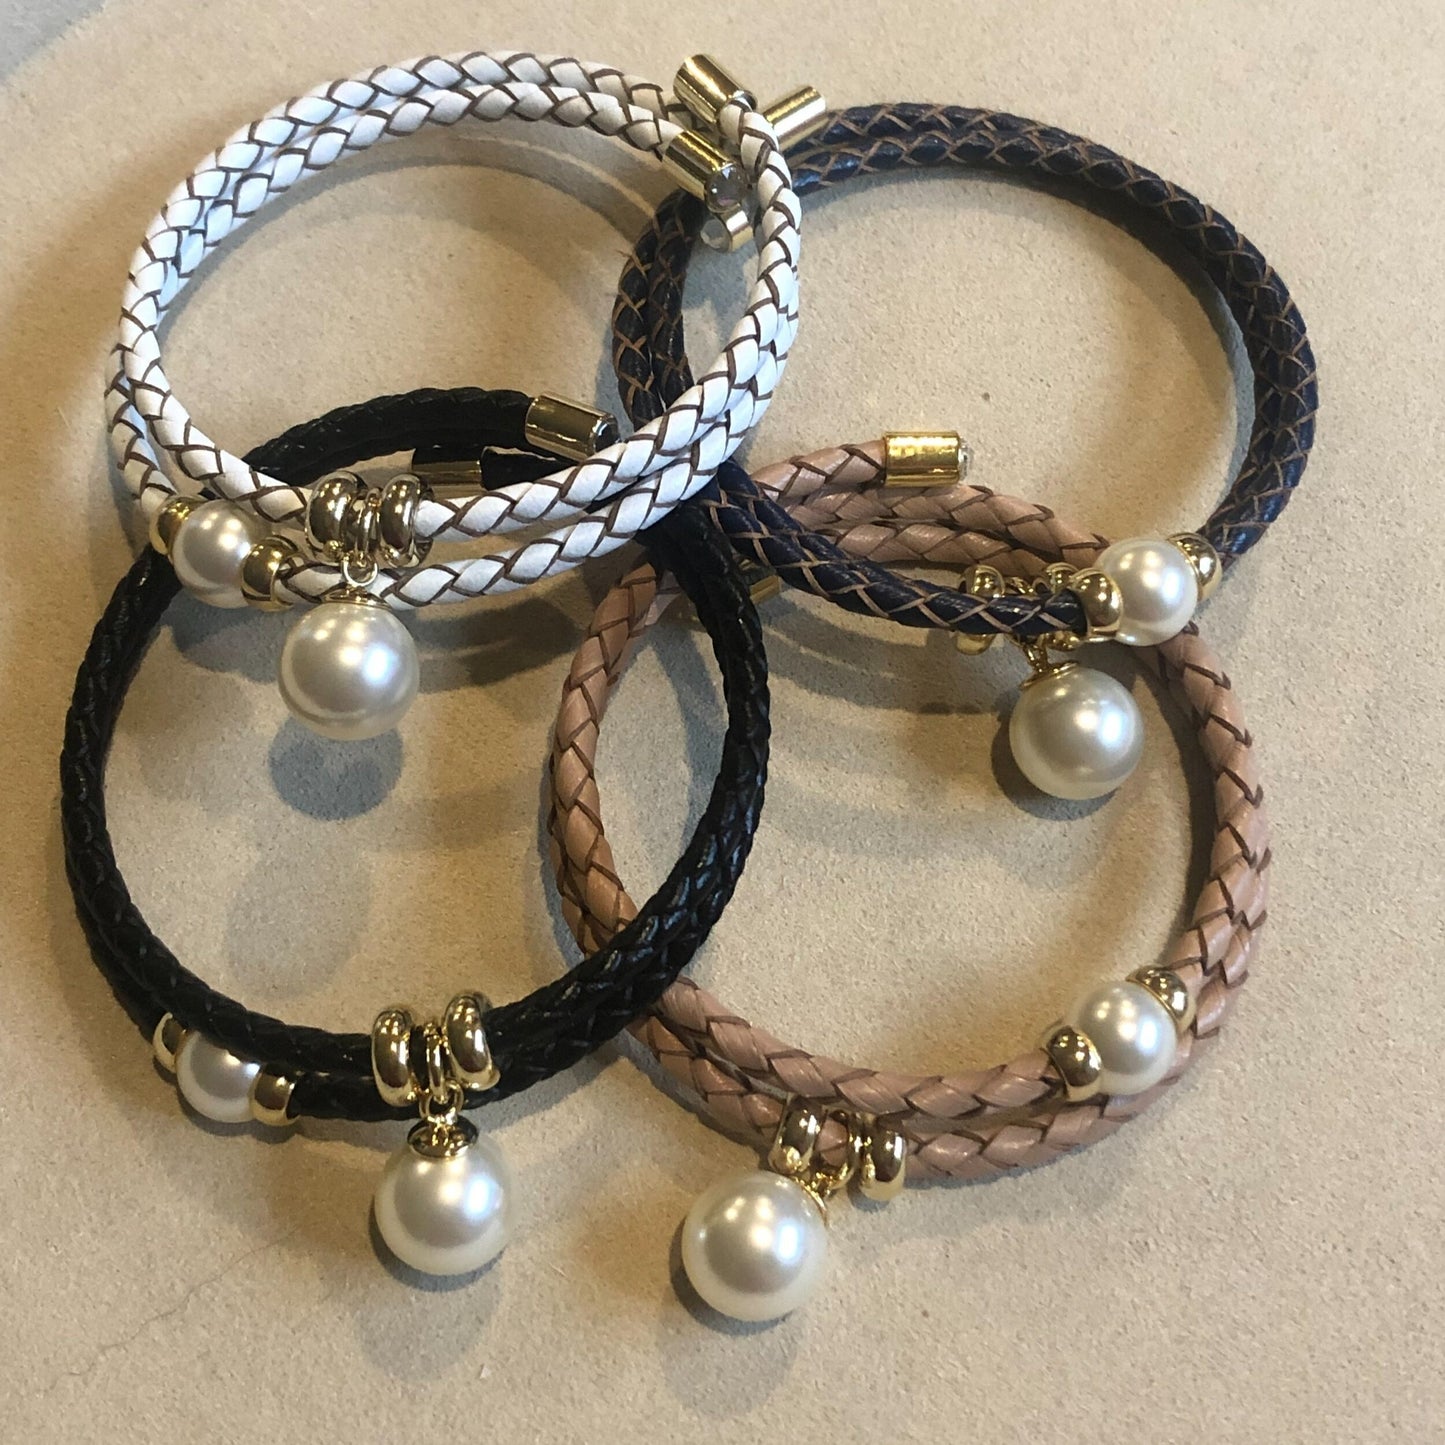 Pearl Rope Bracelet